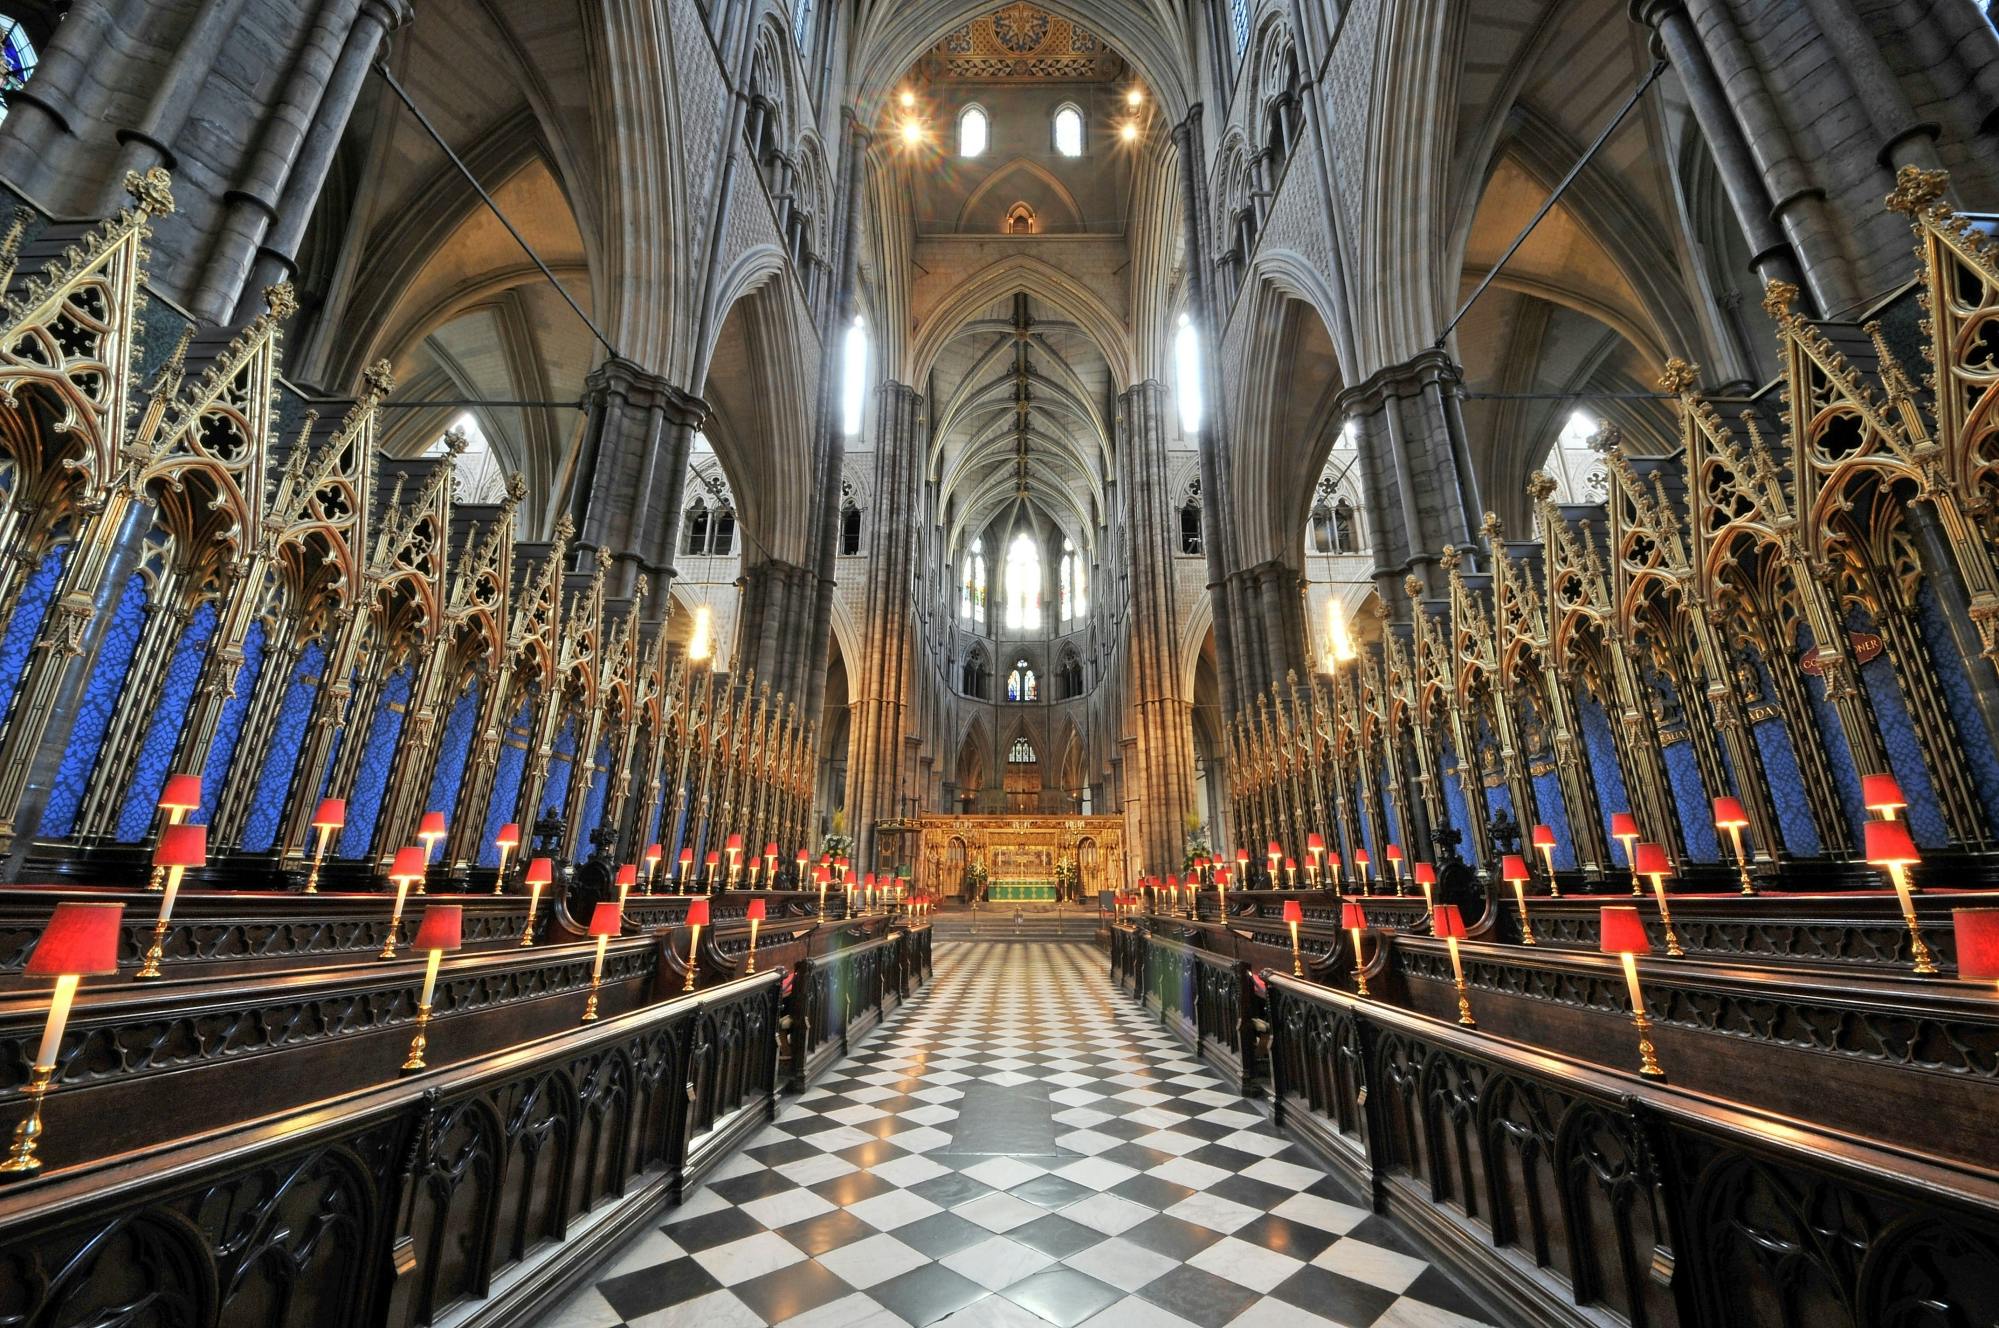 Visita guiada à Abadia de Westminster com London Eye opcional